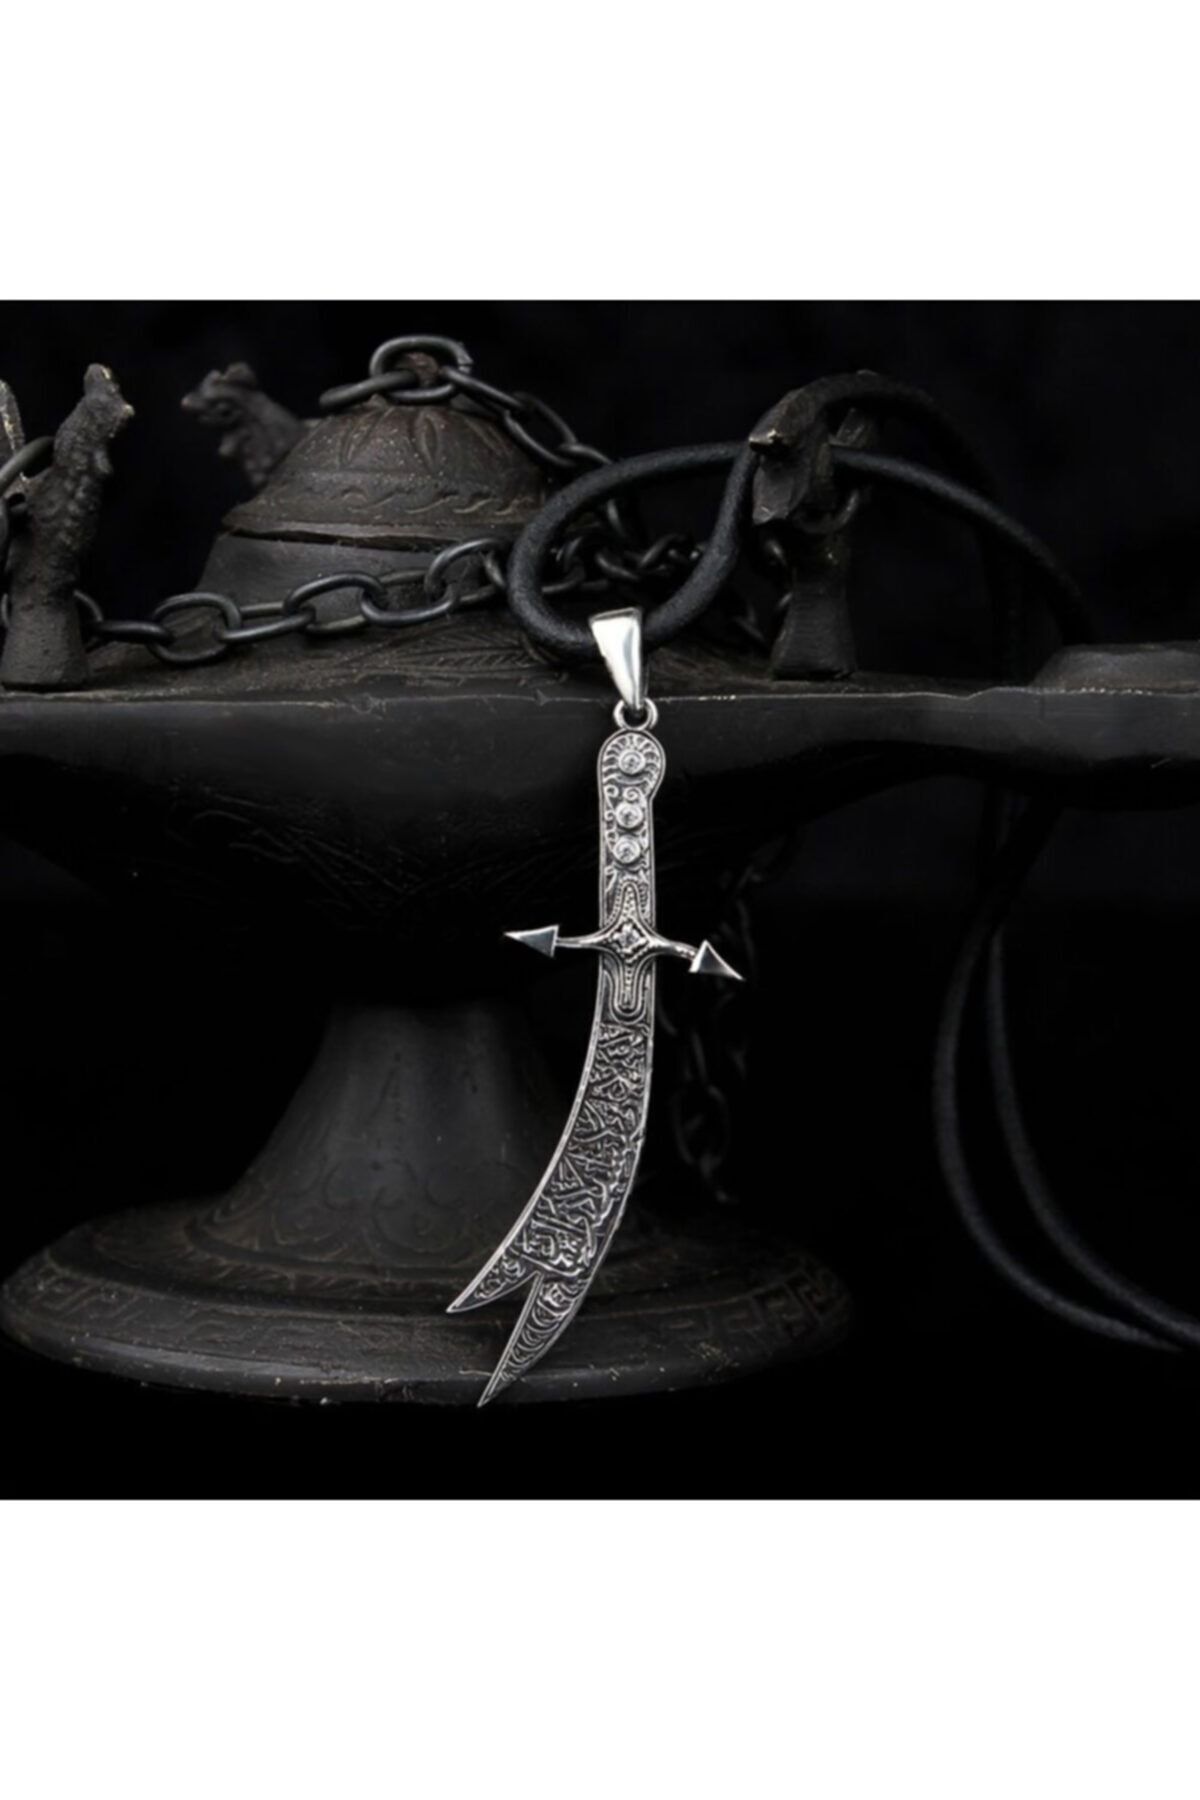 Tesbihsepetim 925 Gümüş Hz Ali Kılıcı Model Kolye